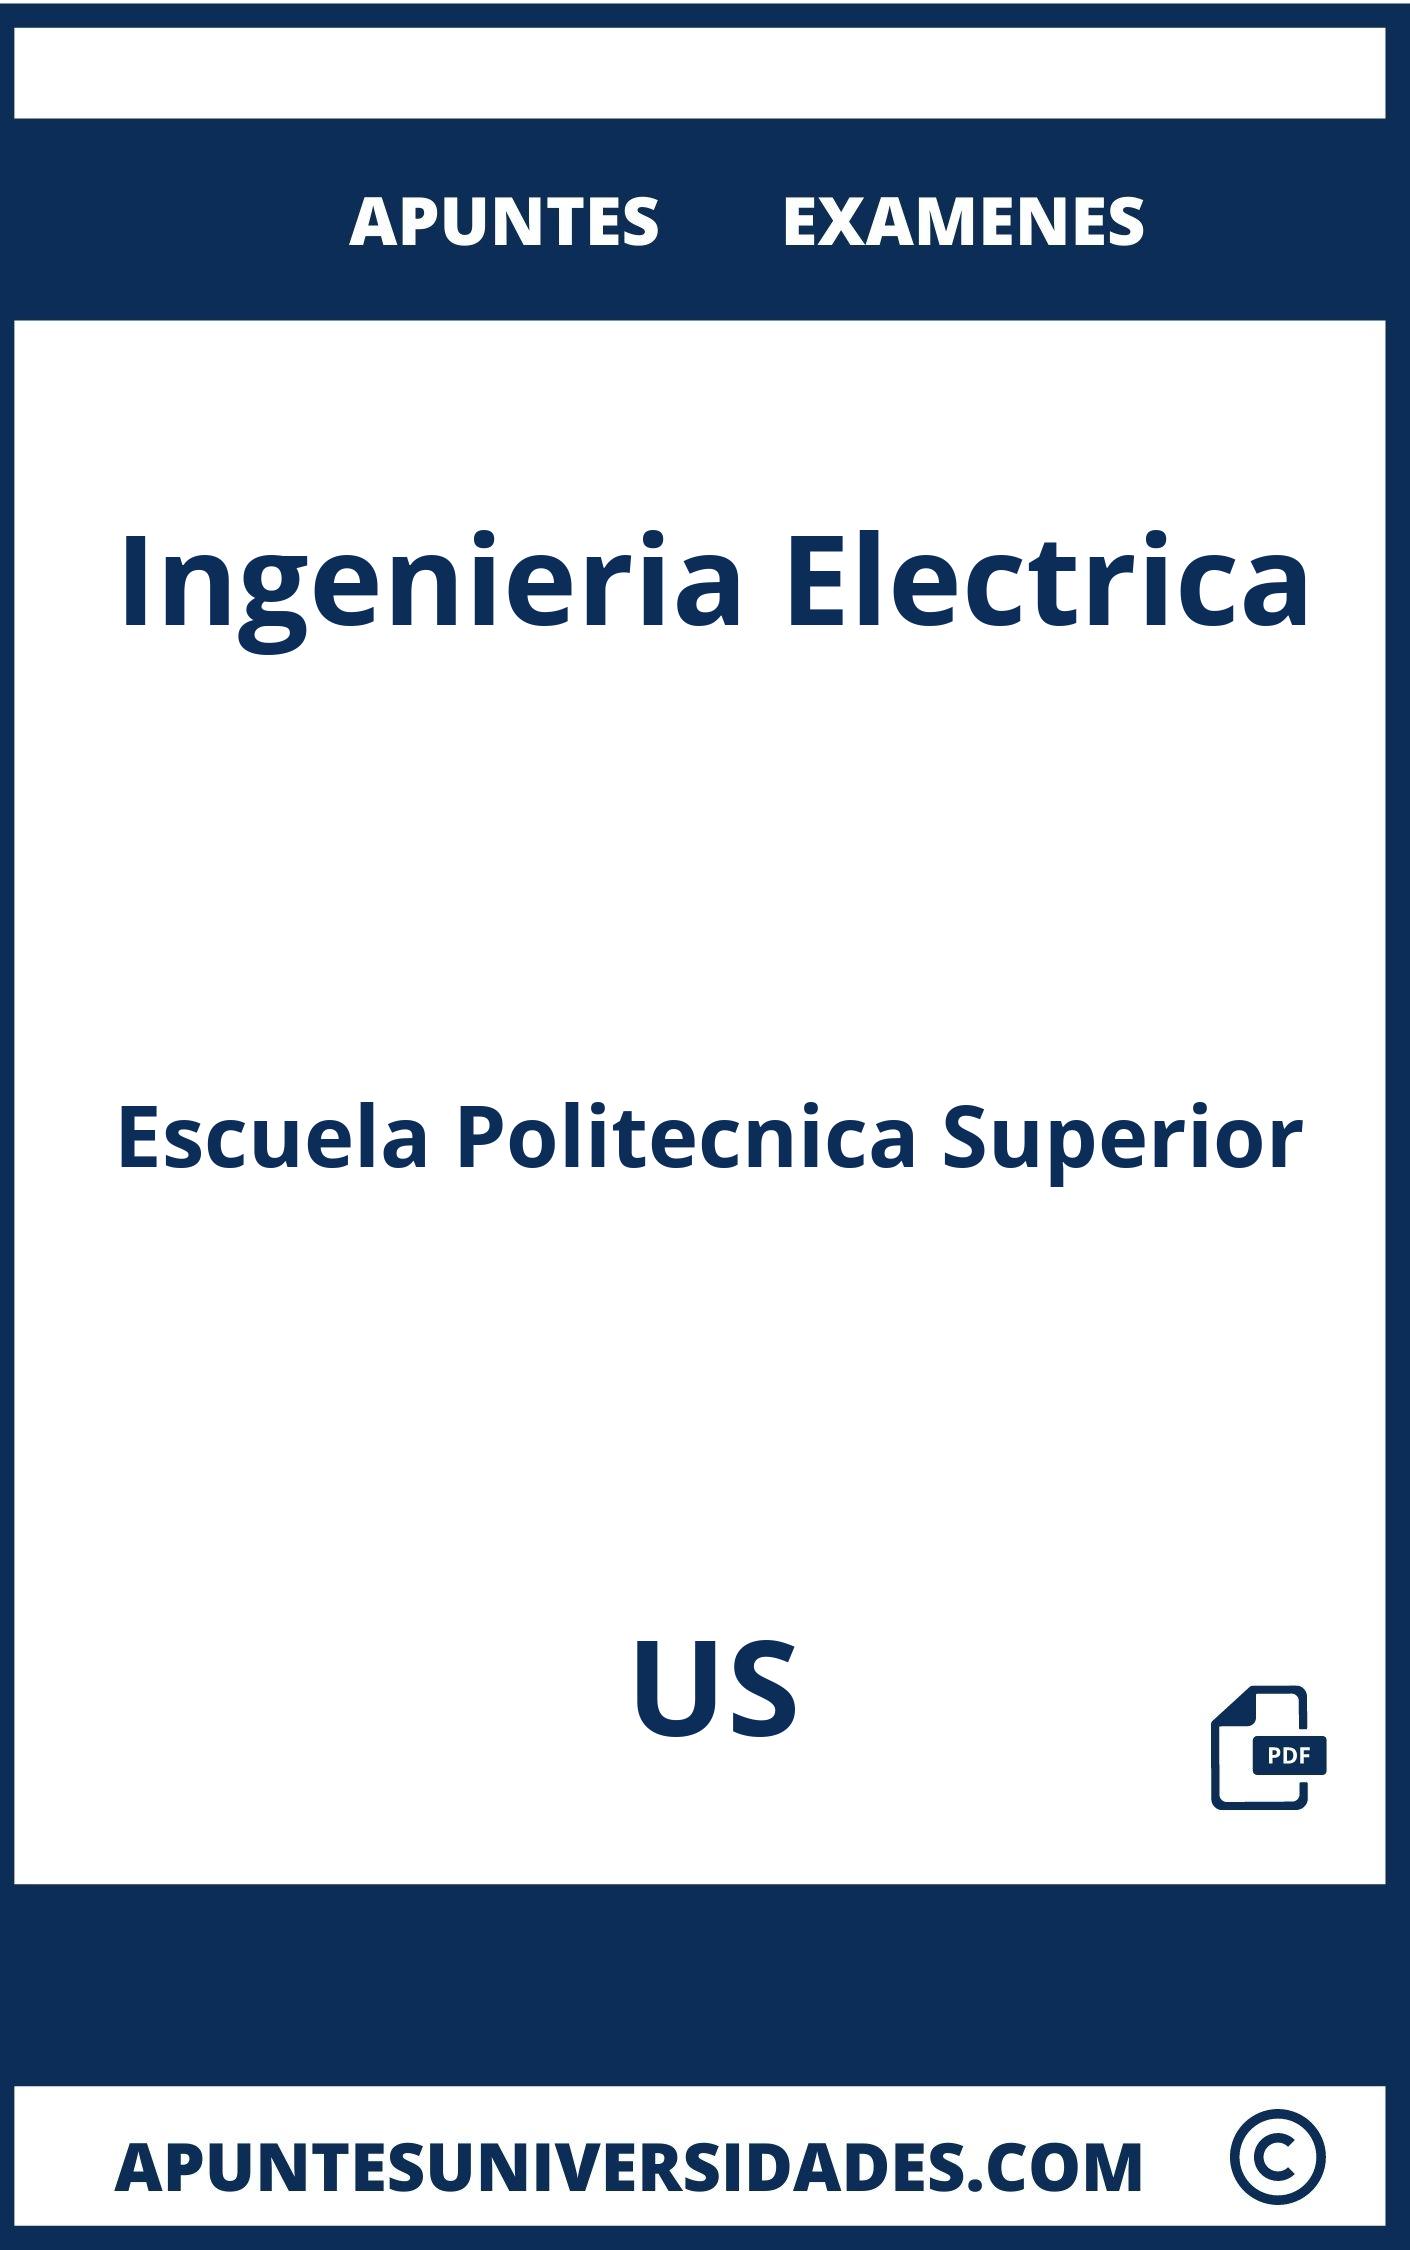 Apuntes Examenes Ingenieria Electrica US